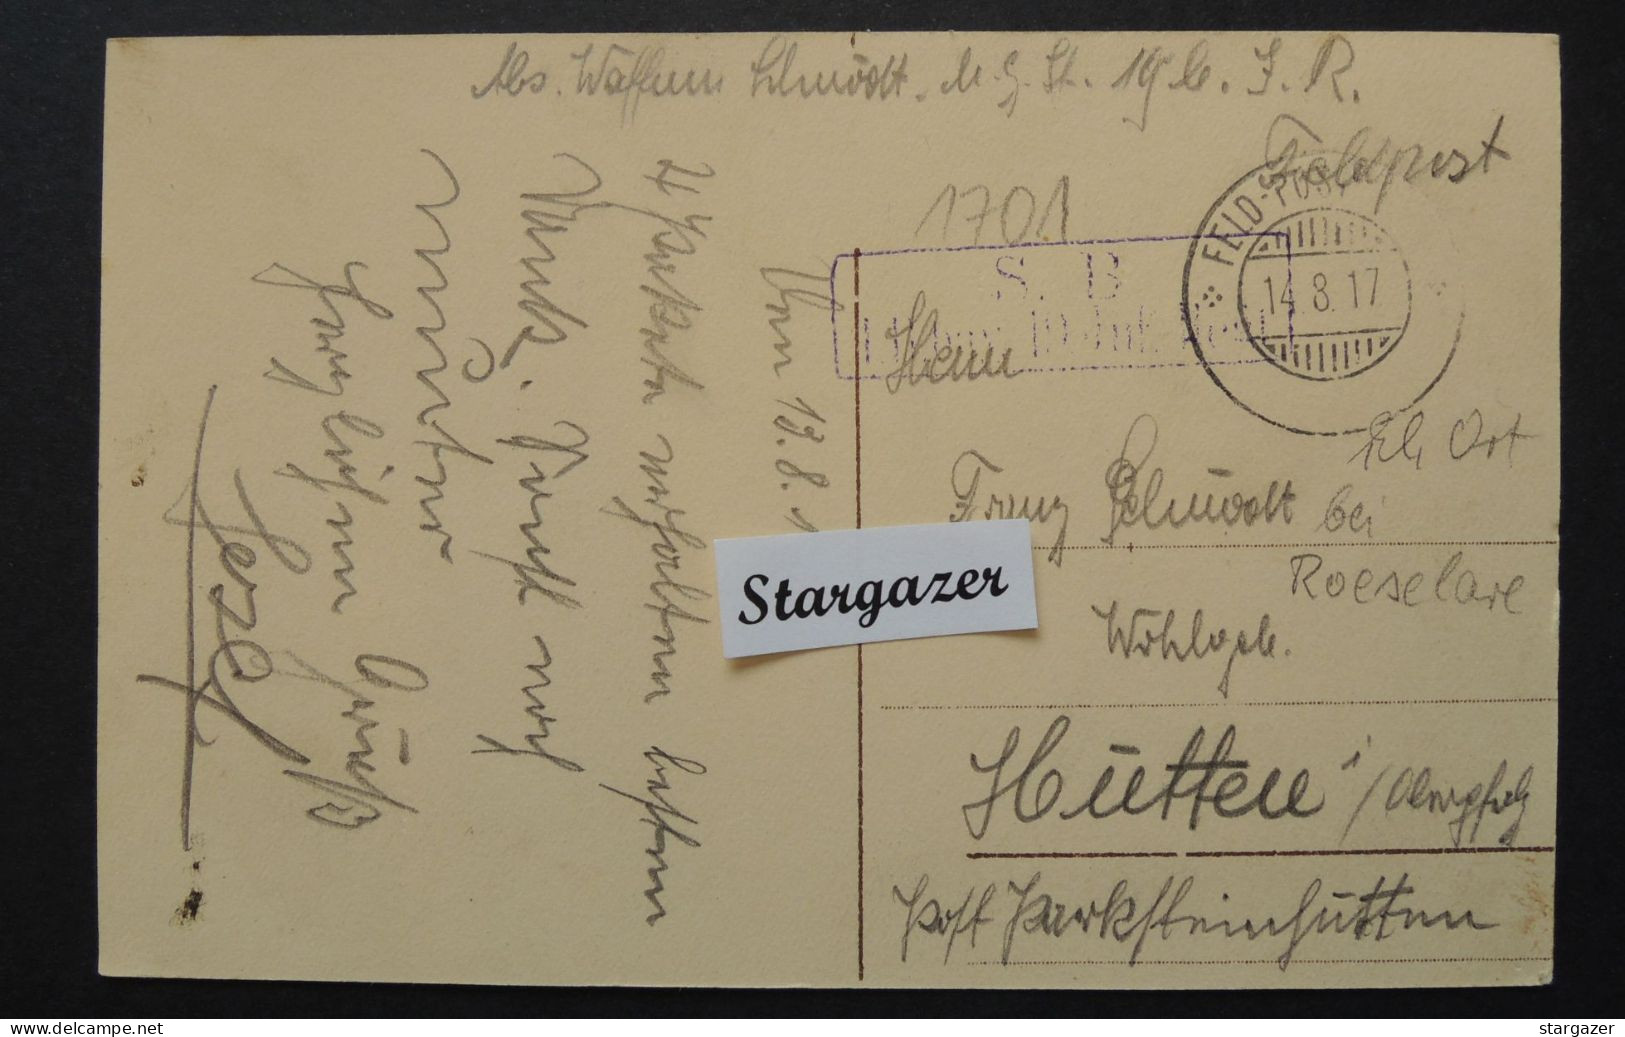 Postkaart "Rumbeke - Plaats", 1917, Feldpost, Geanimeerd (Rumbeke Bij Roeselare) - Roeselare